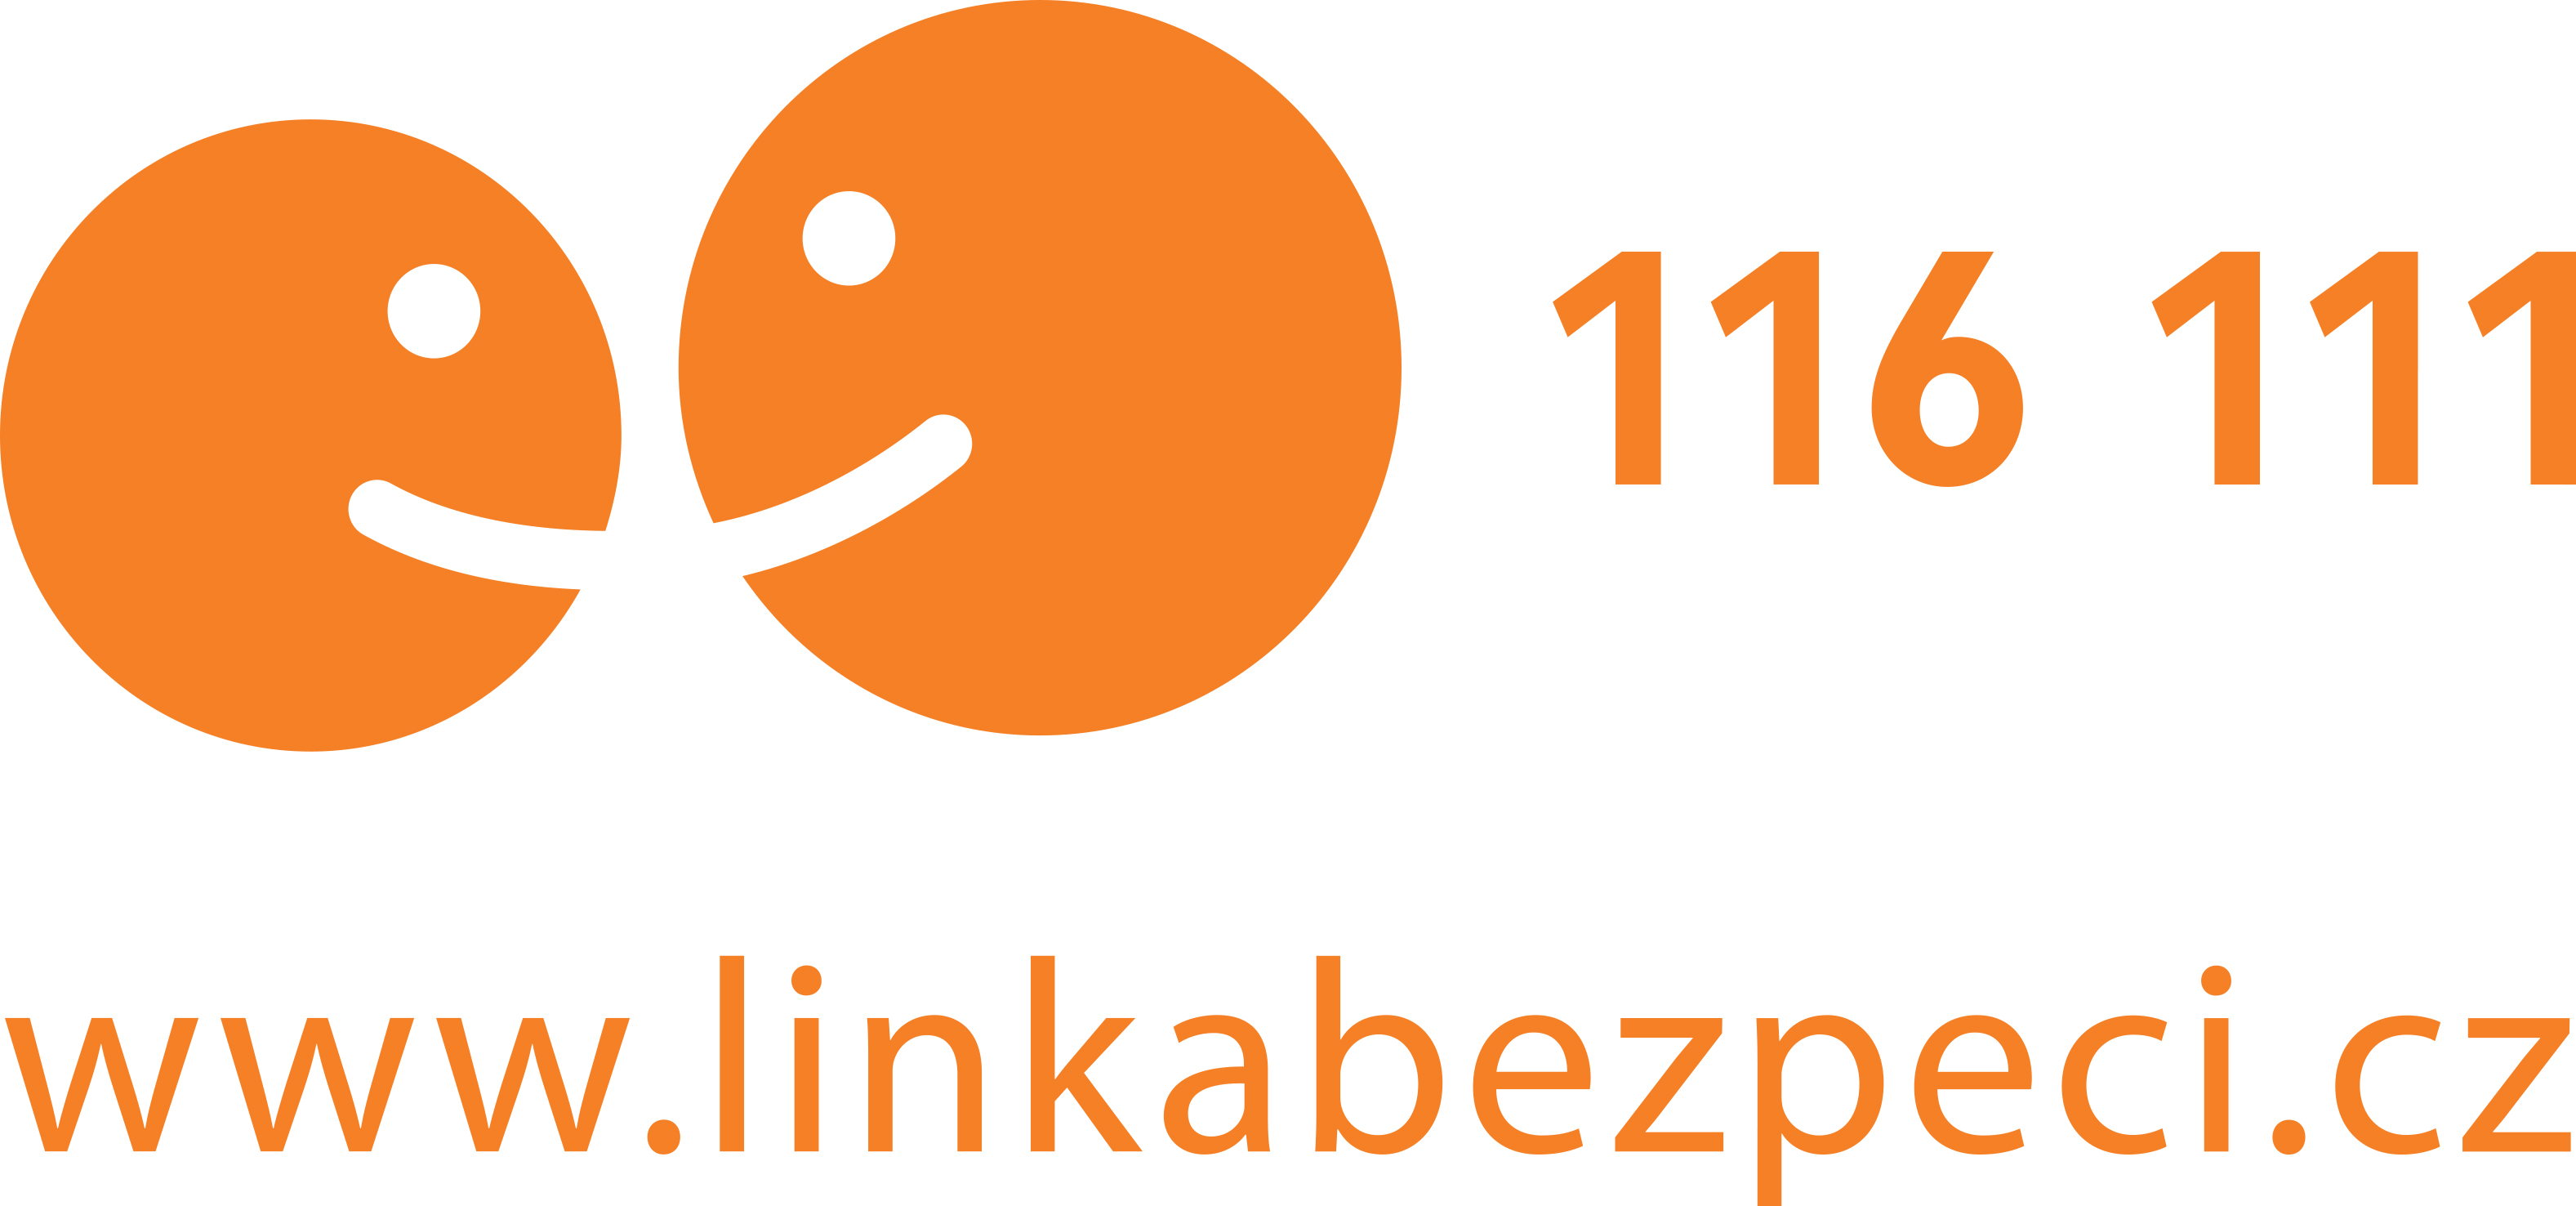 LB_116111_logo_oragne